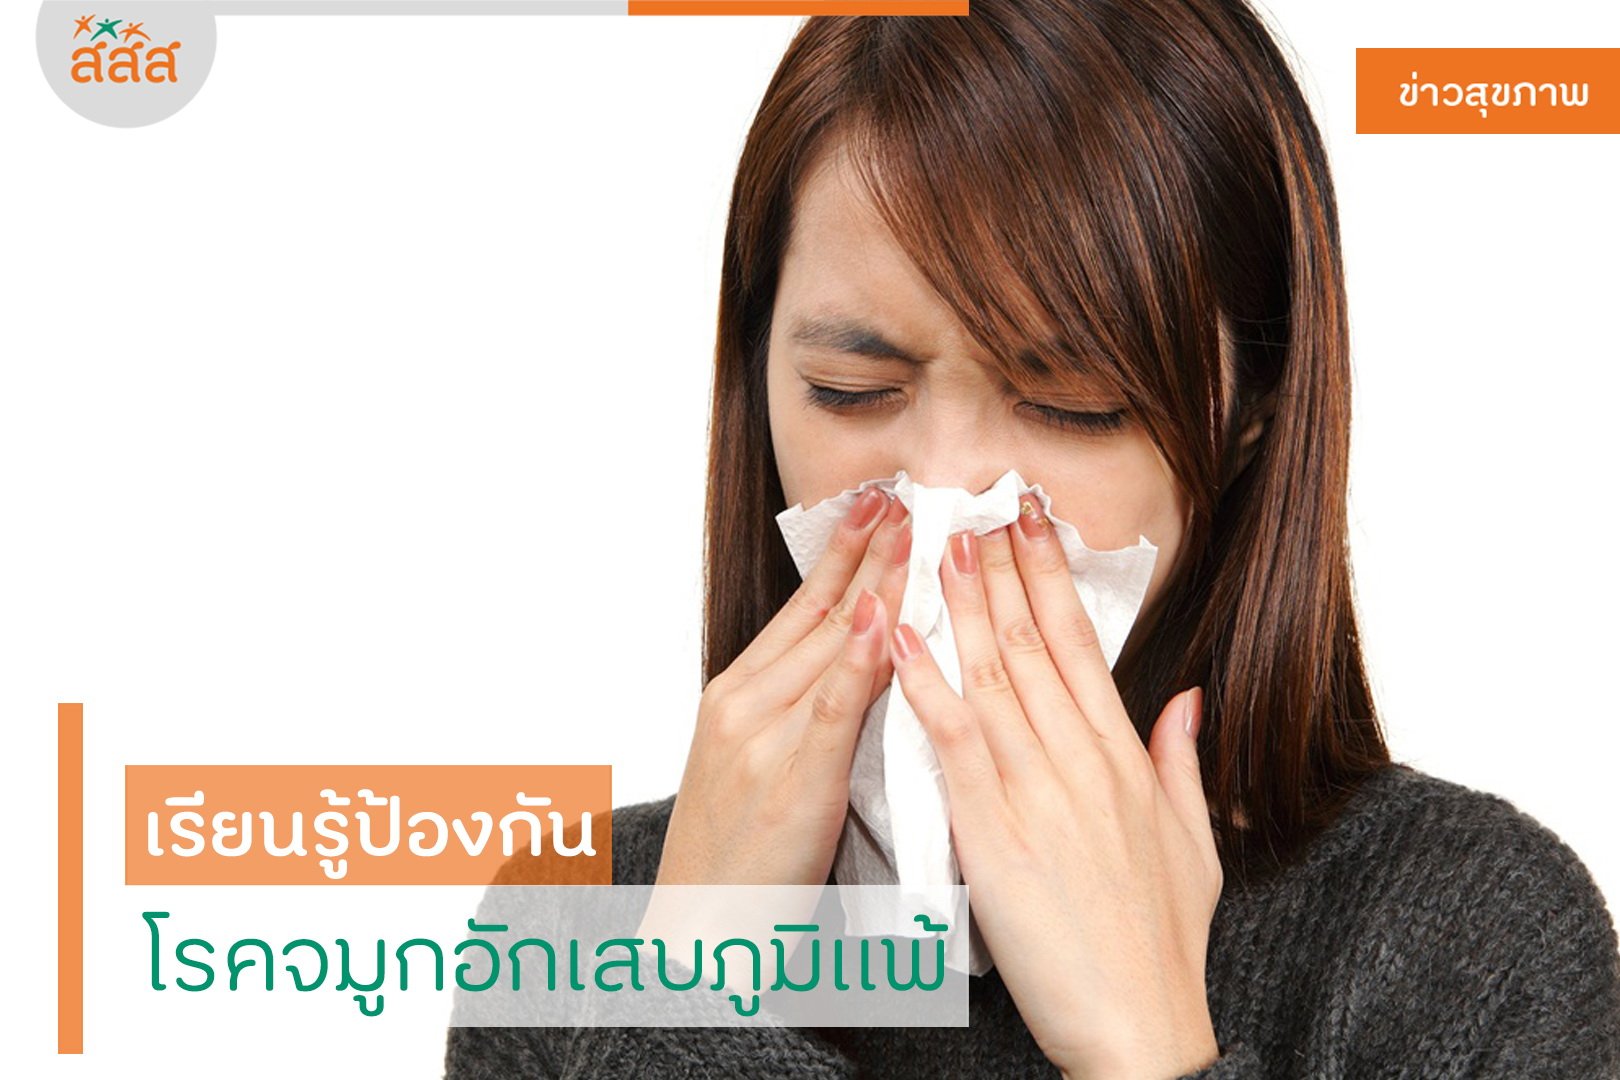 เรียนรู้ป้องกัน โรคจมูกอักเสบภูมิแพ้ thaihealth